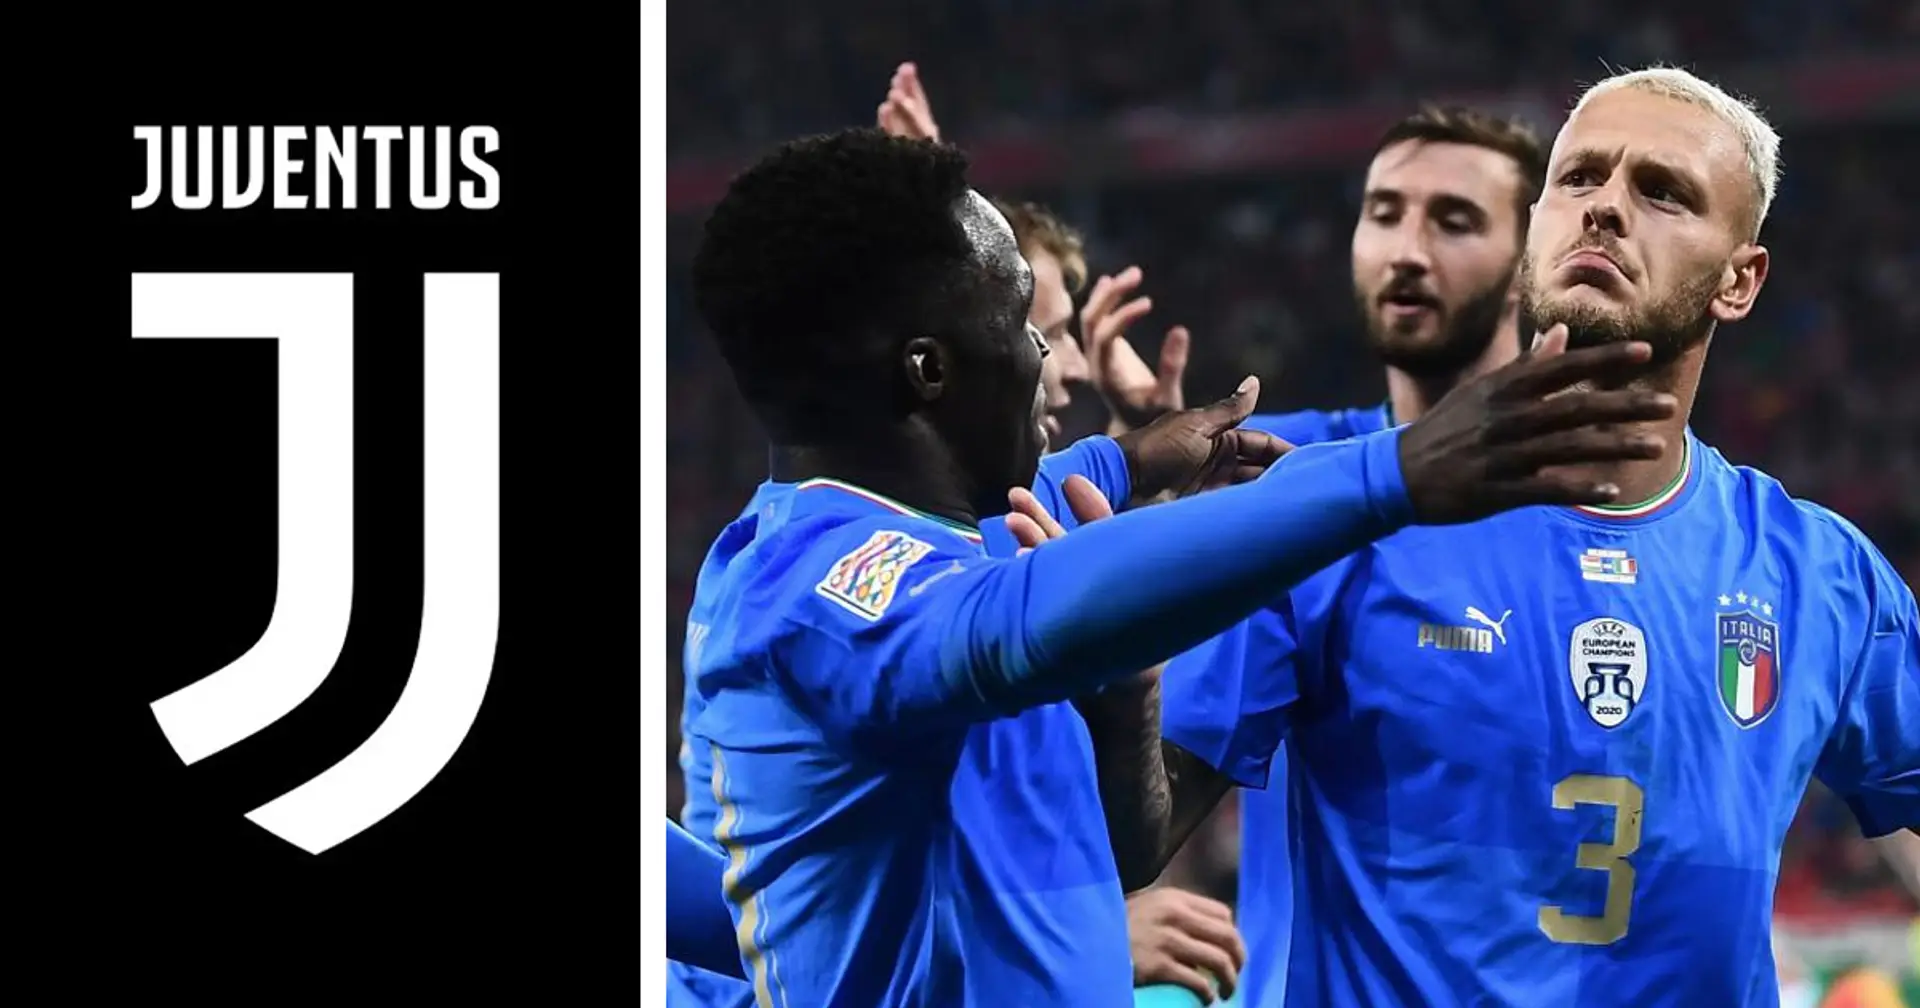 Italia-Inghilterra match storico per la Juventus:  eguagliato record negativo dopo quasi 30 anni